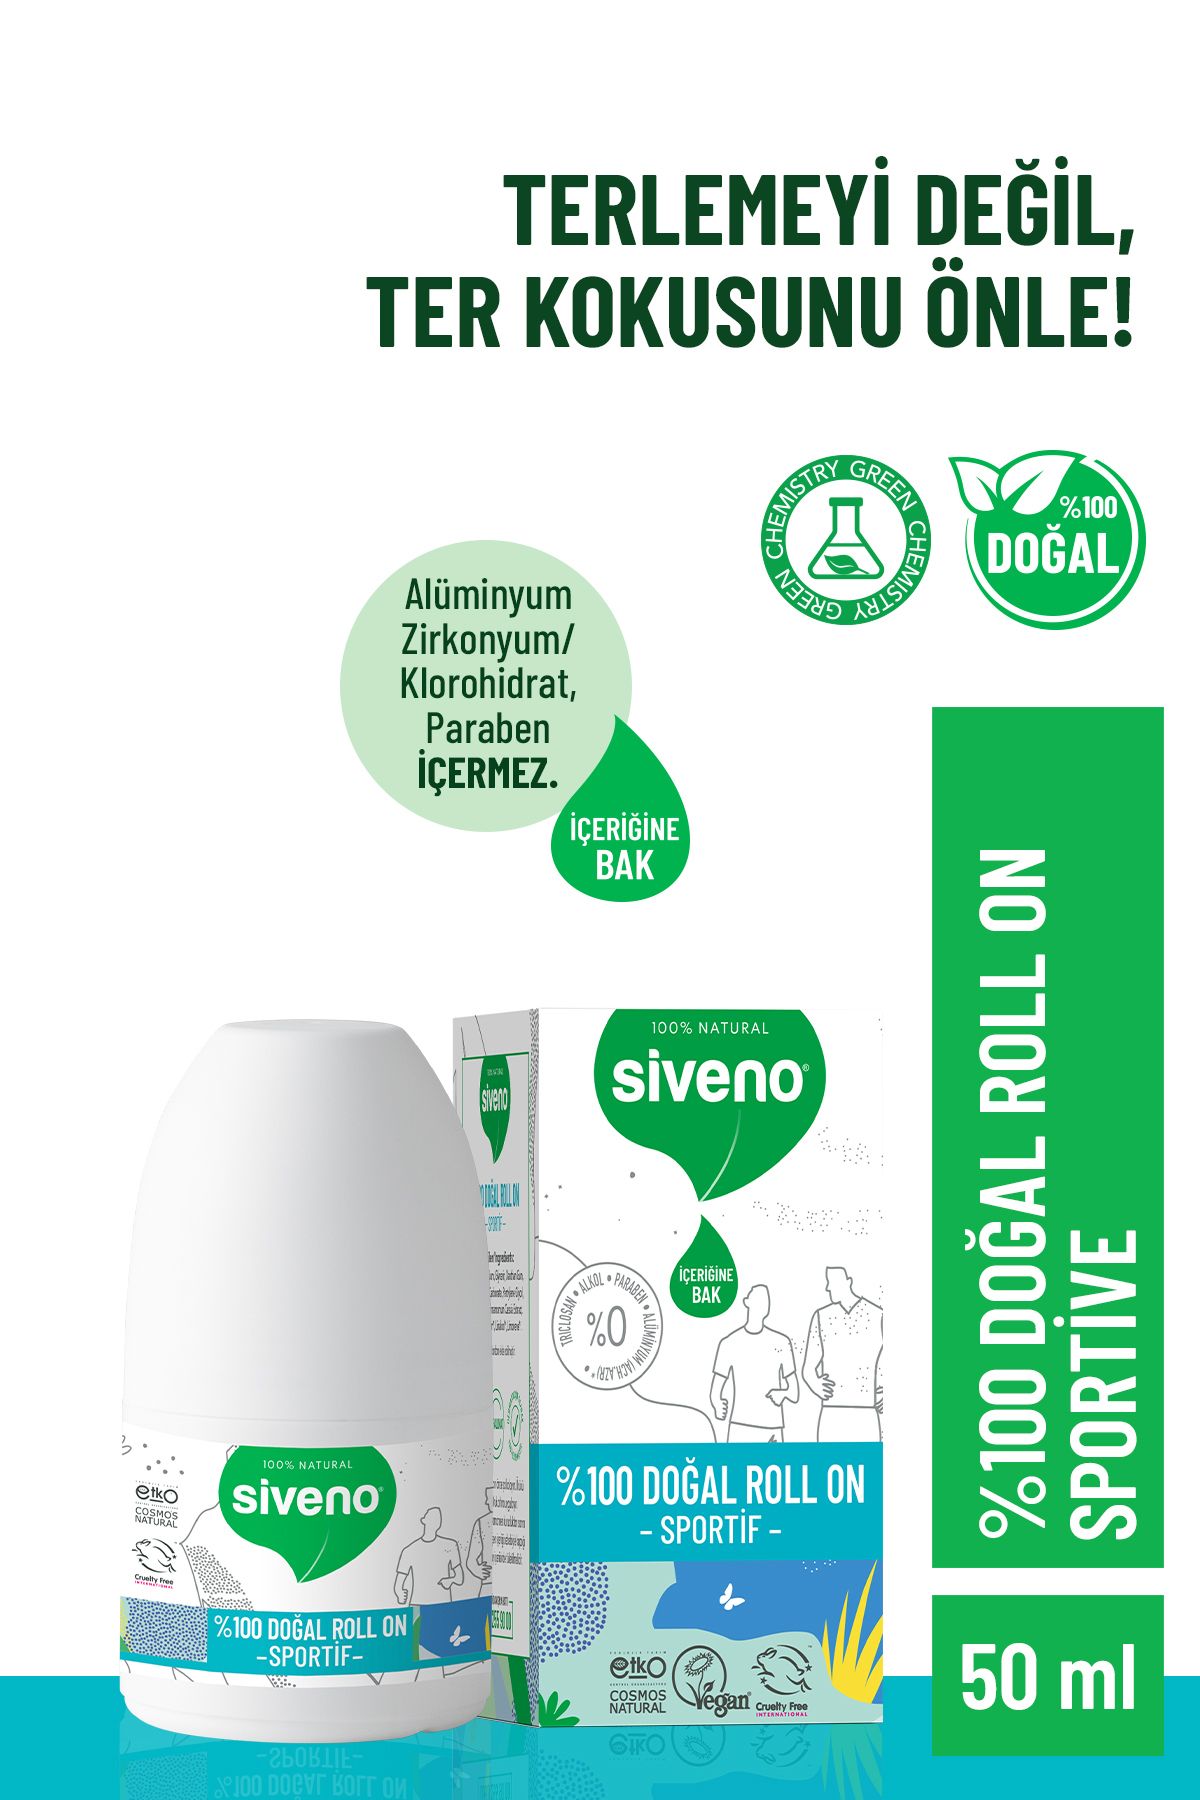 Siveno %100 Doğal Roll-on Sportif Sporcu Deodorant Ter Kokusu Önleyici Bitkisel Lekesiz Vegan 50 ml